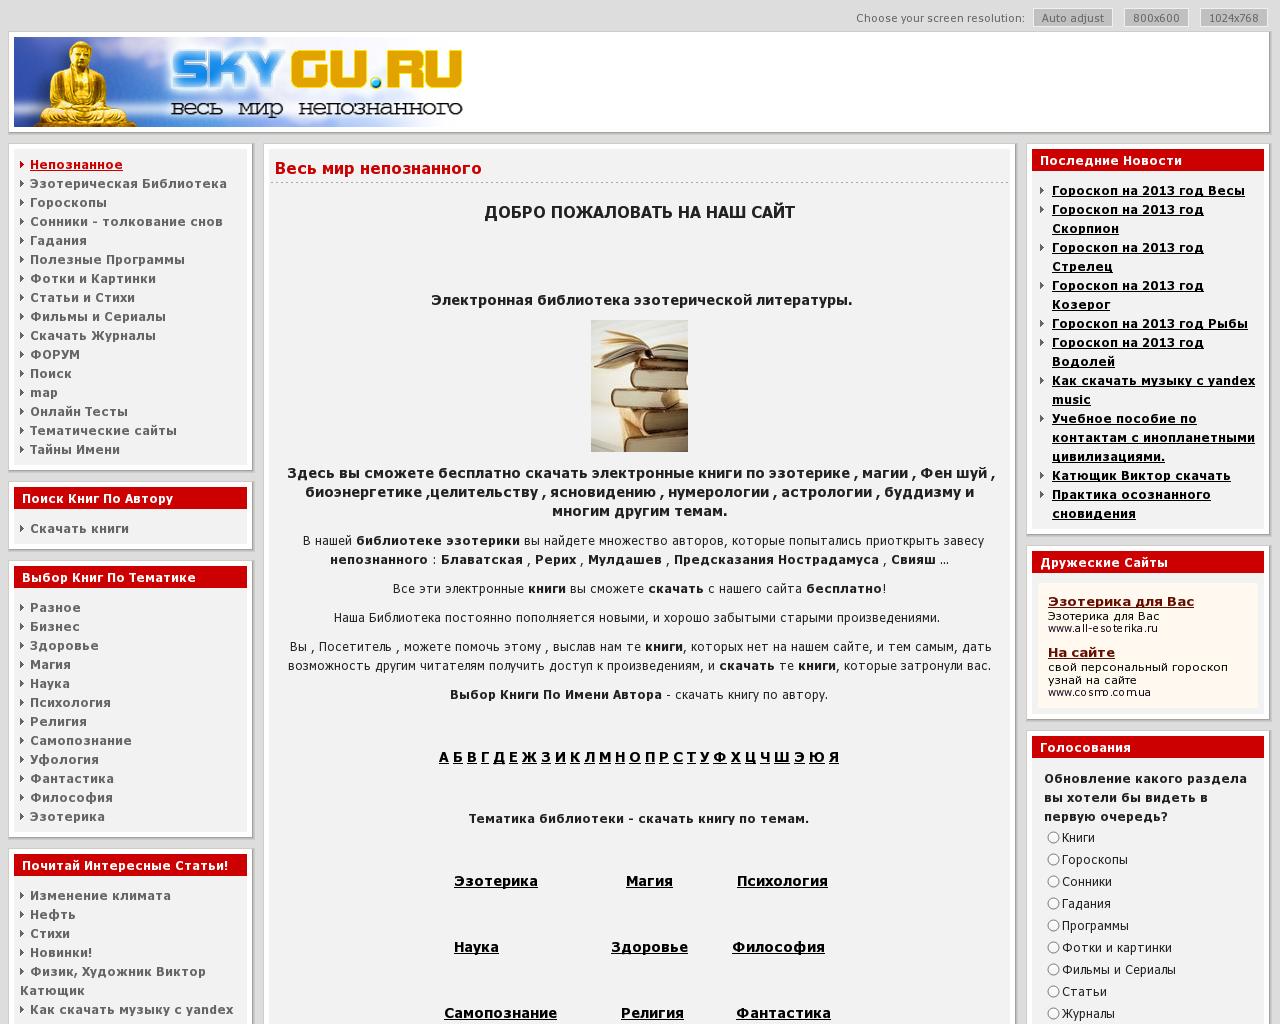 Изображение сайта skygu.ru в разрешении 1280x1024